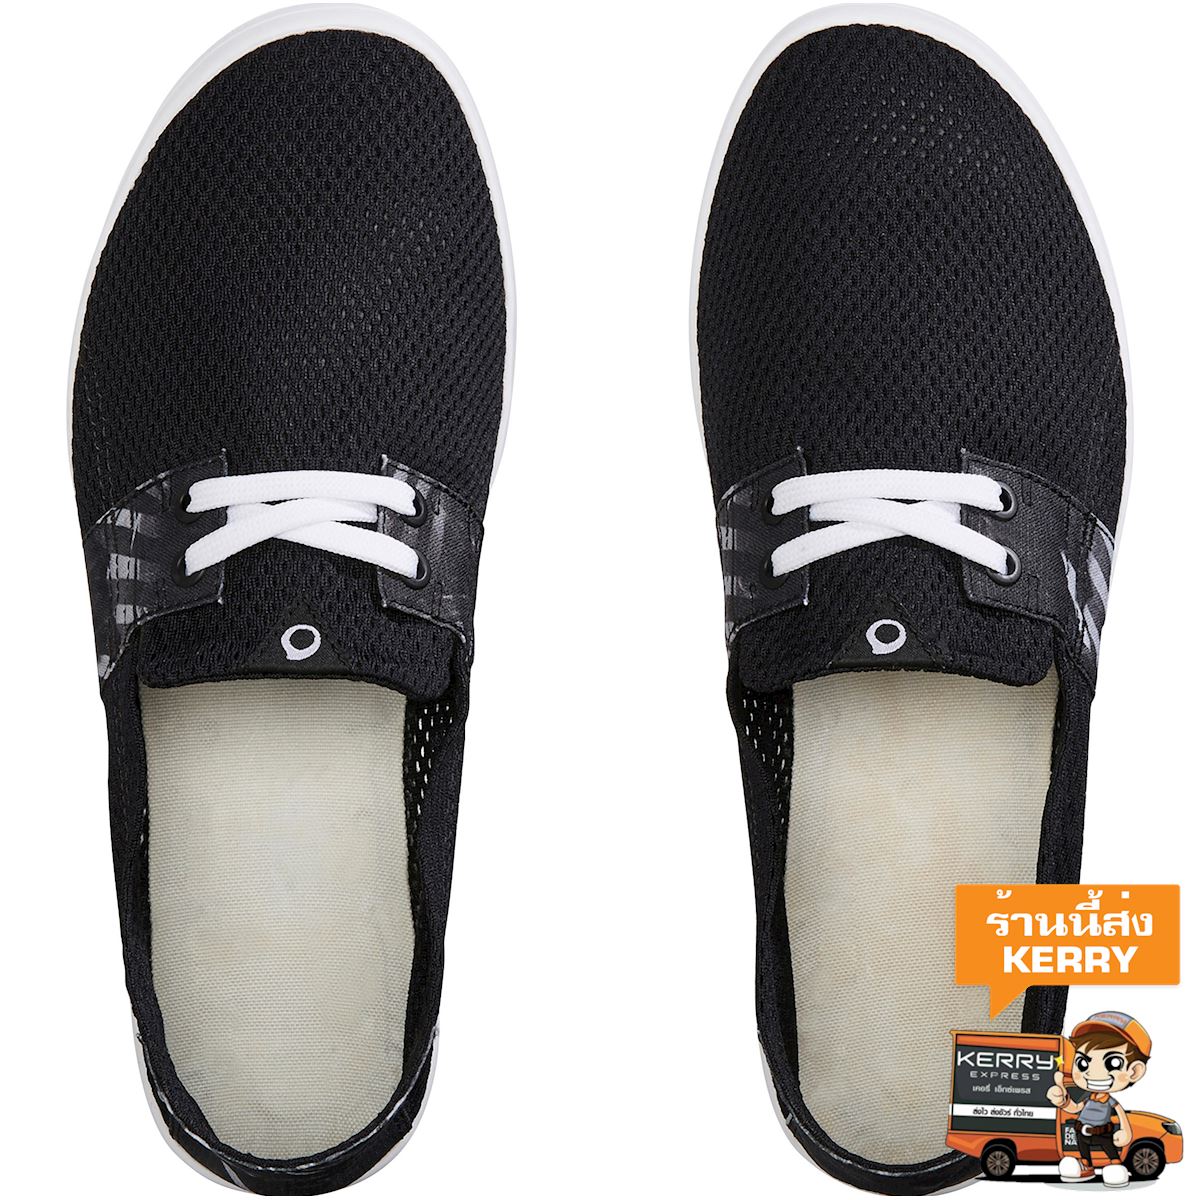 รองเท้าสำหรับผู้ชายรุ่น AREETA Tropi (สีดำ) รองเท้า สกิมบอร์ด บอดี้บอร์ด กระดานโต้คลื่น บอดี้เซิร์ฟ รองเท้ากีฬา รองเท้าลุยน้ำ